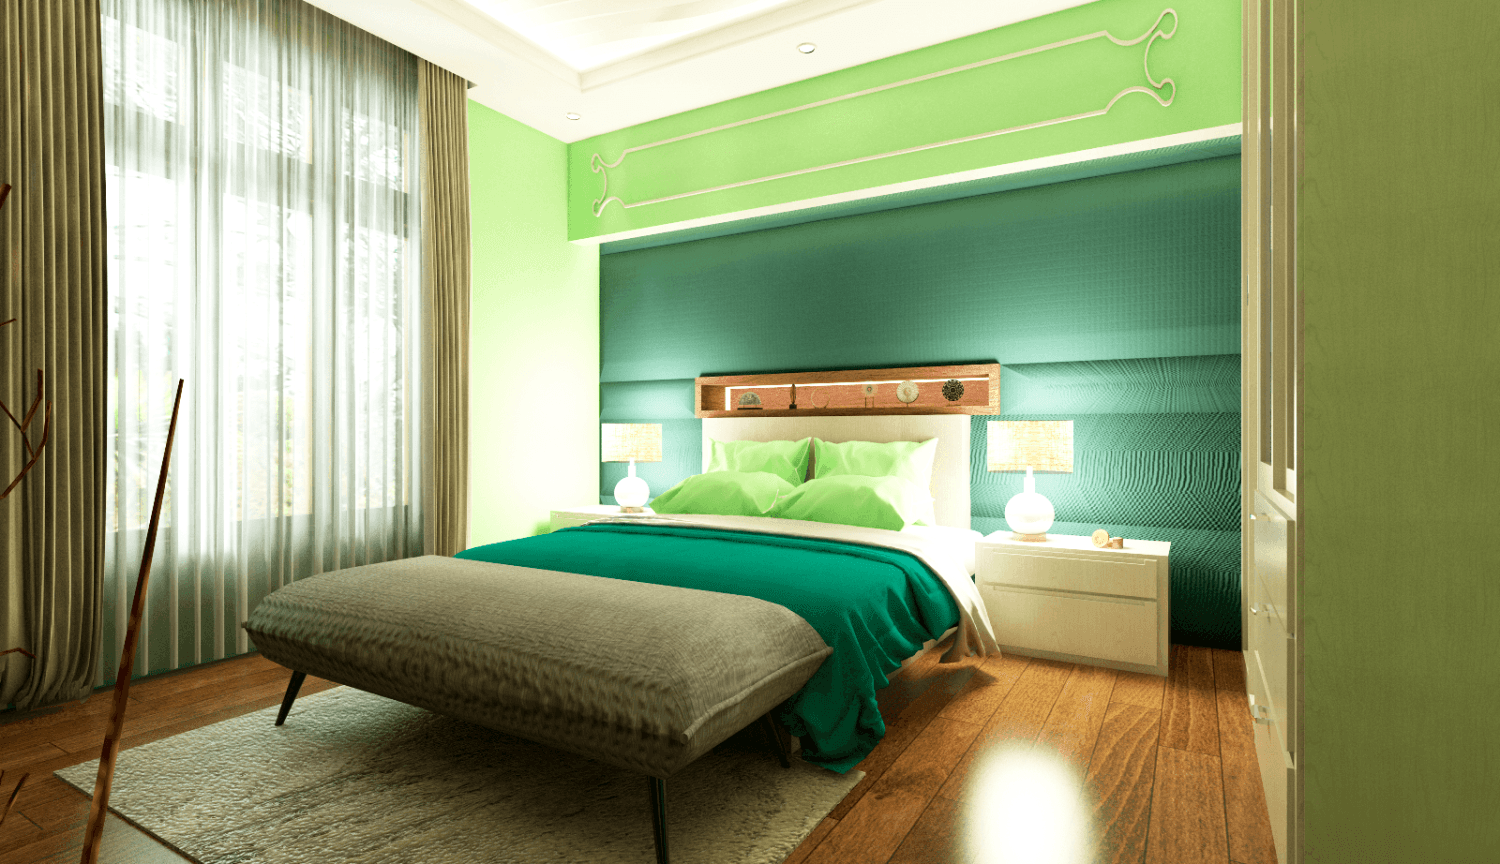 Tips Membuat Kamar Tidur Tertata Bersih, Rapi Dan Cantik - Tempat Tidur Yang Rapi - HD Wallpaper 